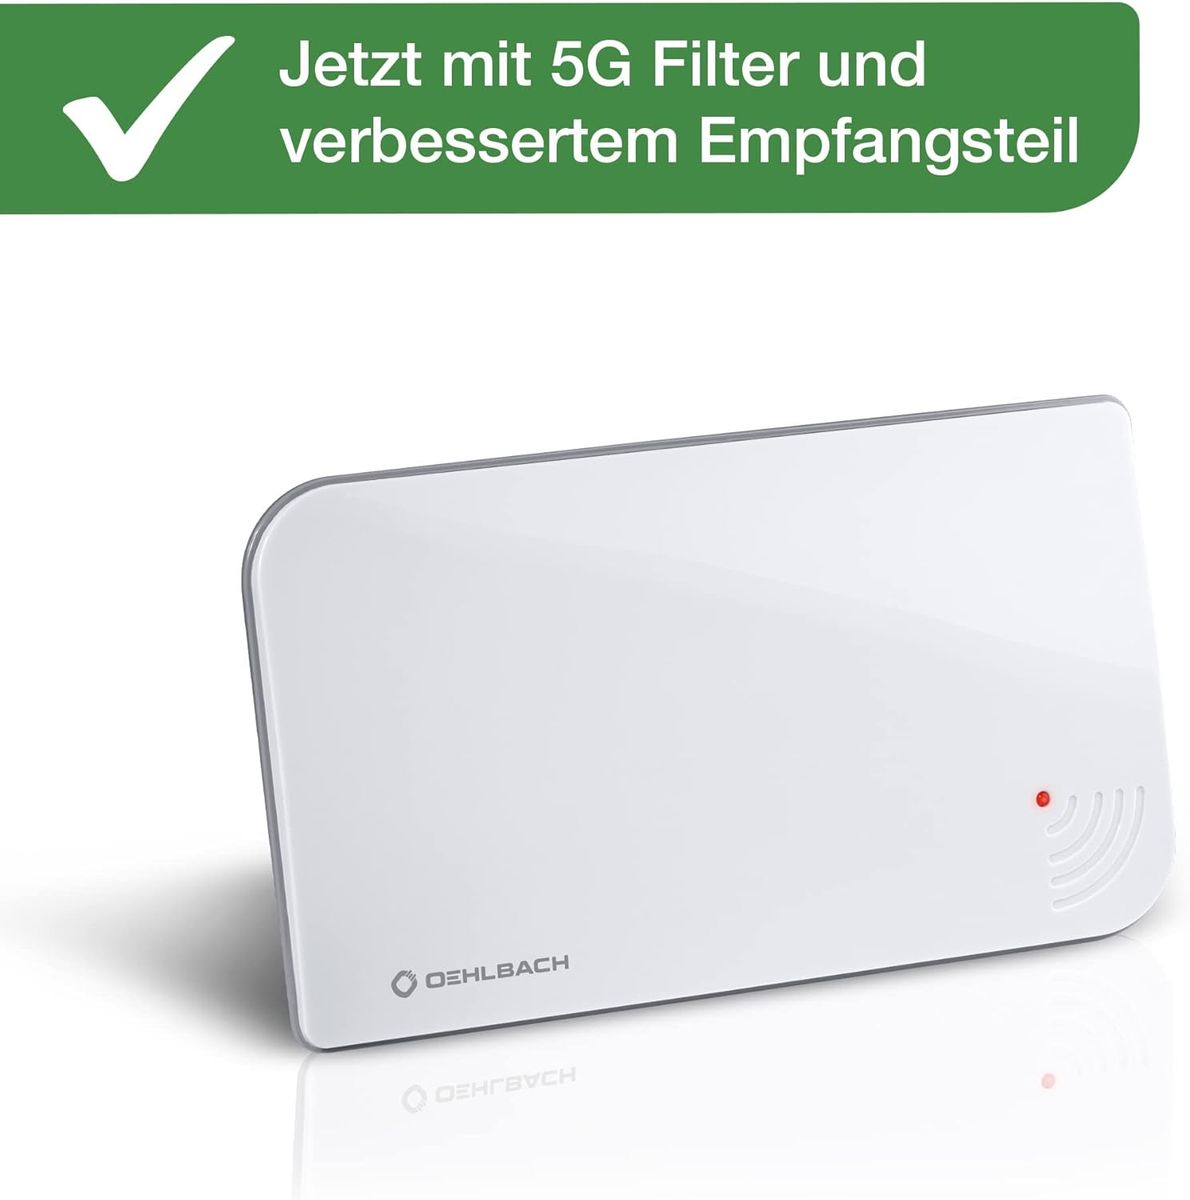 Oehlbach Scope Vision 5G DVB-T2 HD Antenne - Digitale Zimmerantenne - Aktiv DVB-T-Verstärker - Nachfolger unseres Testsiegers - Jetzt mit 5G Filter, weiß Weiß mit 5G Filter Single